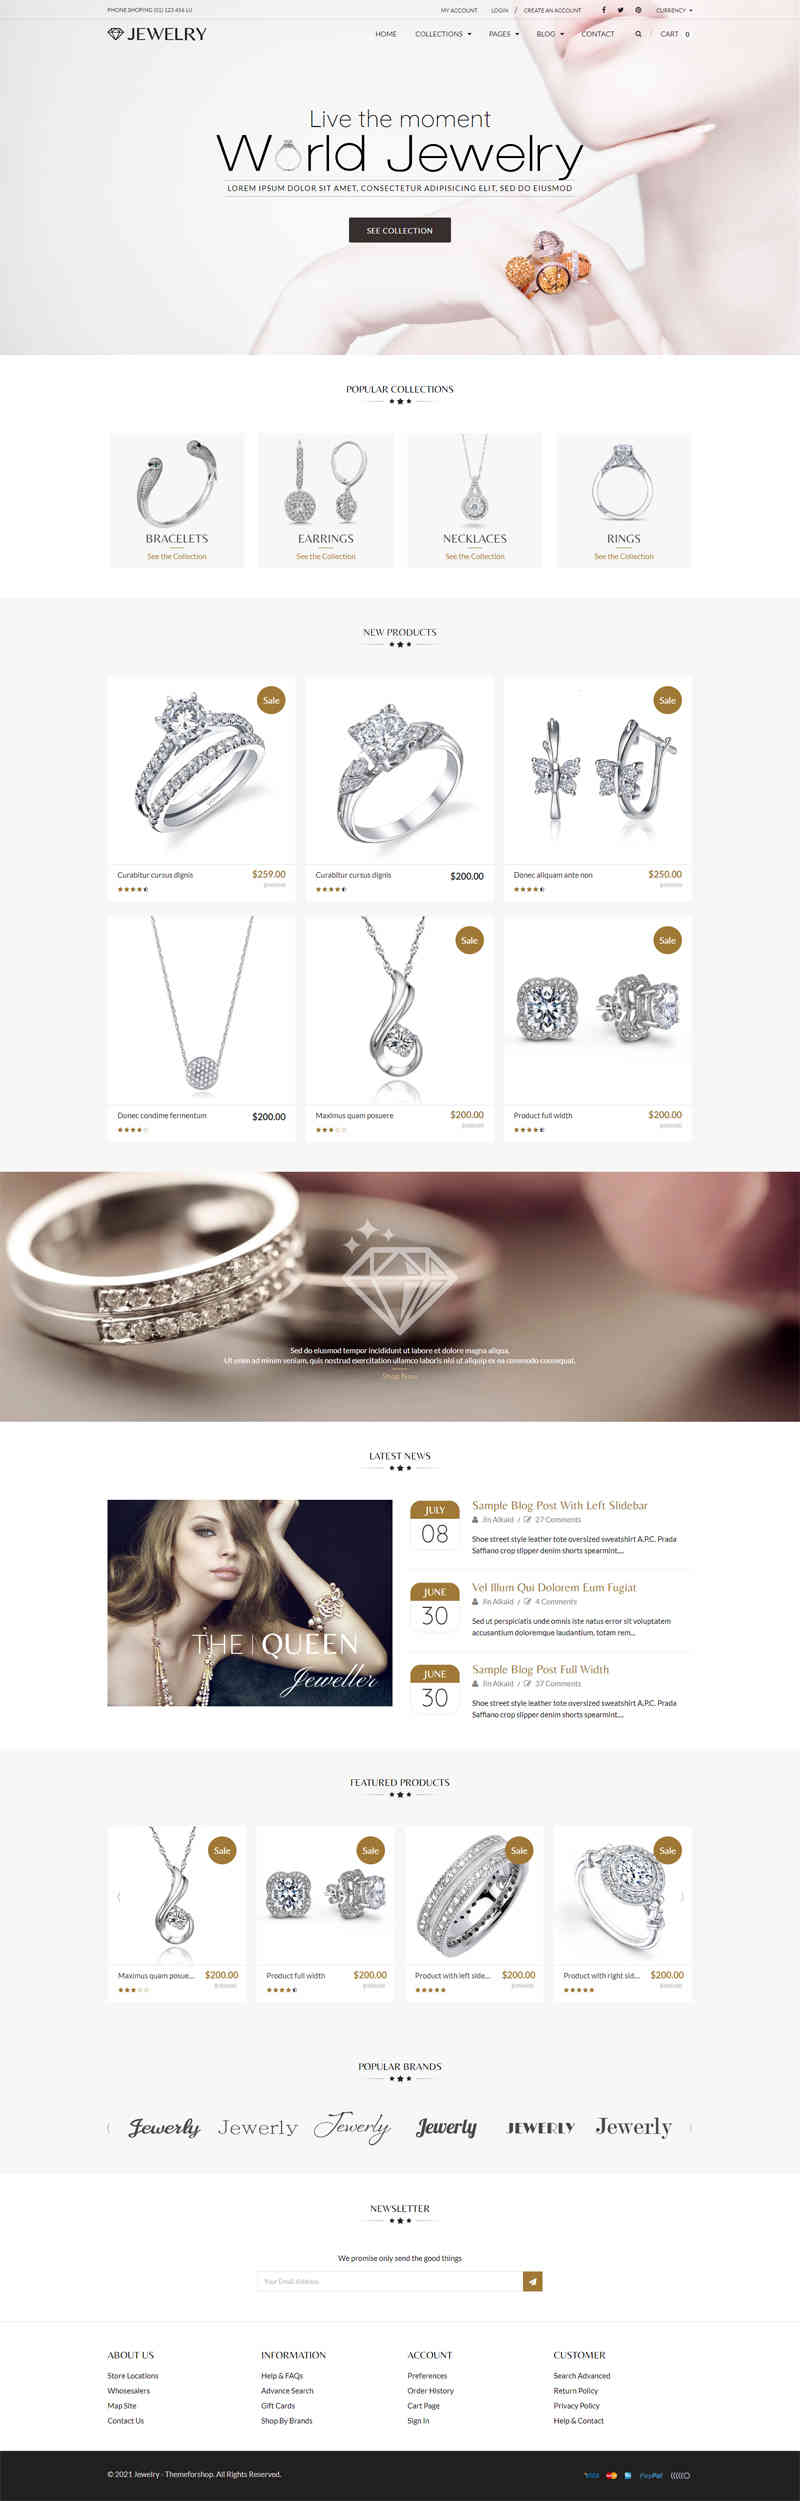 thiet ke website tmi jewelry 210015